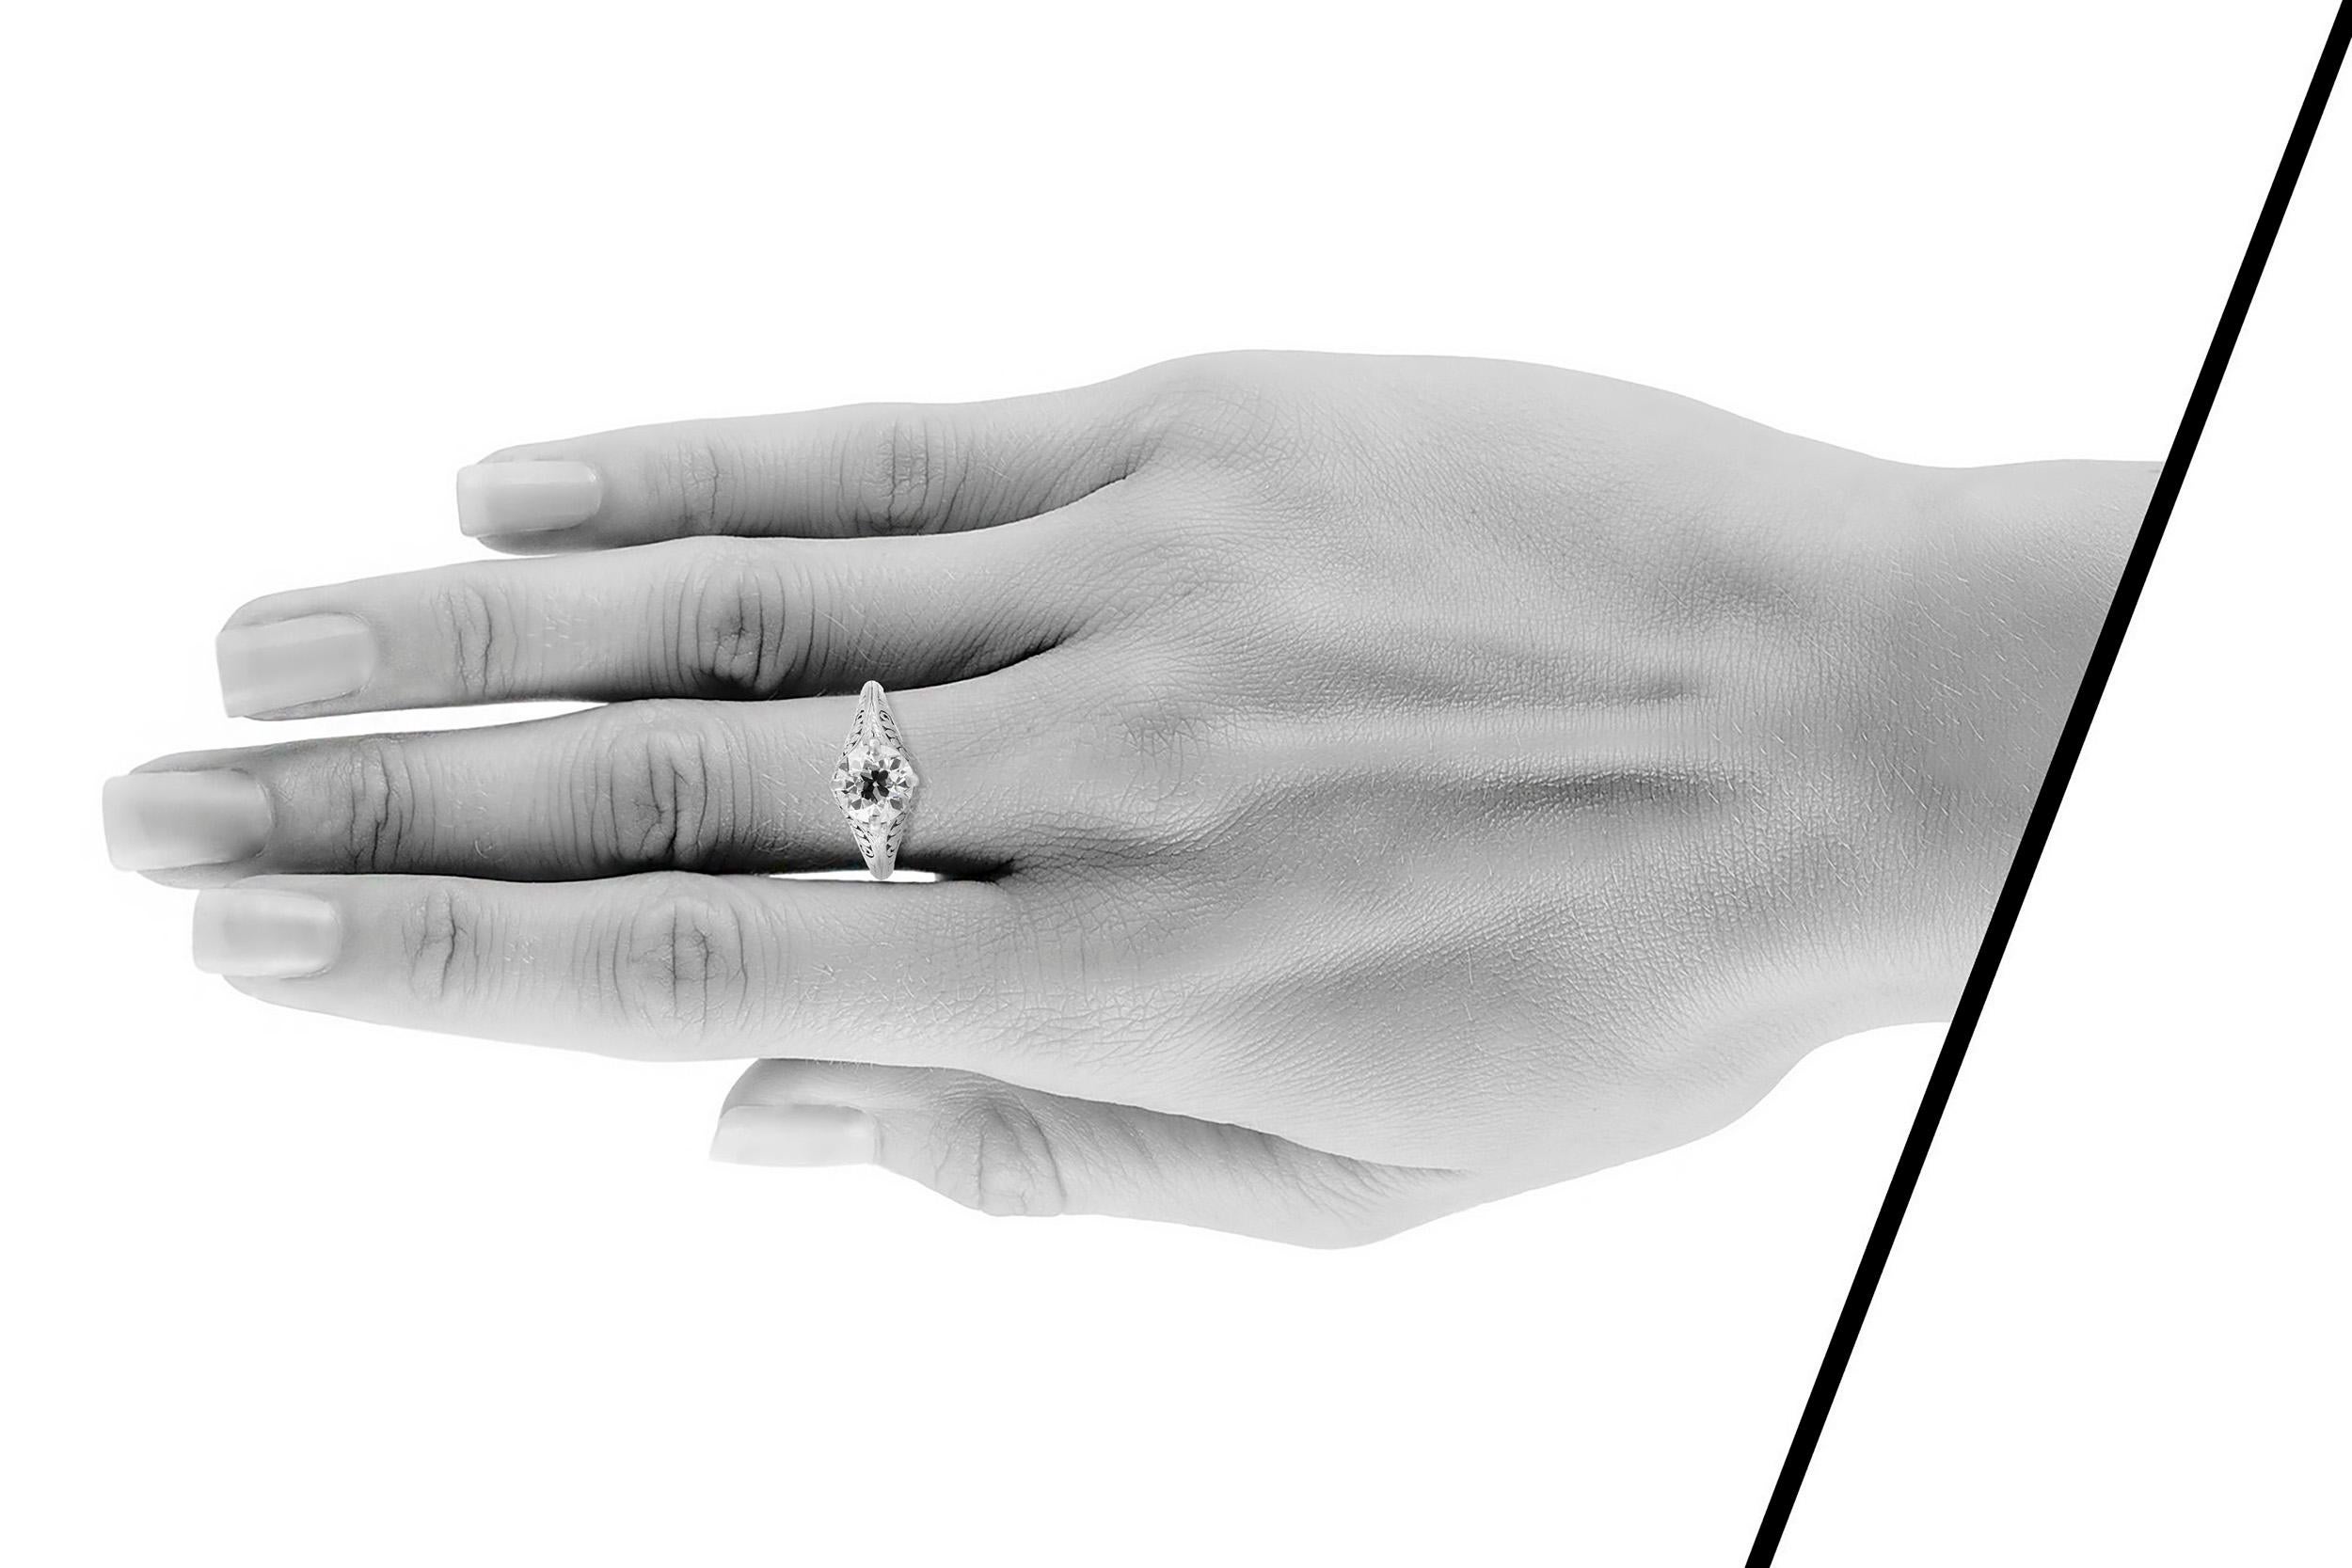 Der schöne Ring ist fein in Platin mit Zentrum Diamant mit einem Gesamtgewicht von etwa 1,70 Karat gefertigt.
Um 1930
Leicht zu ändernde Größe